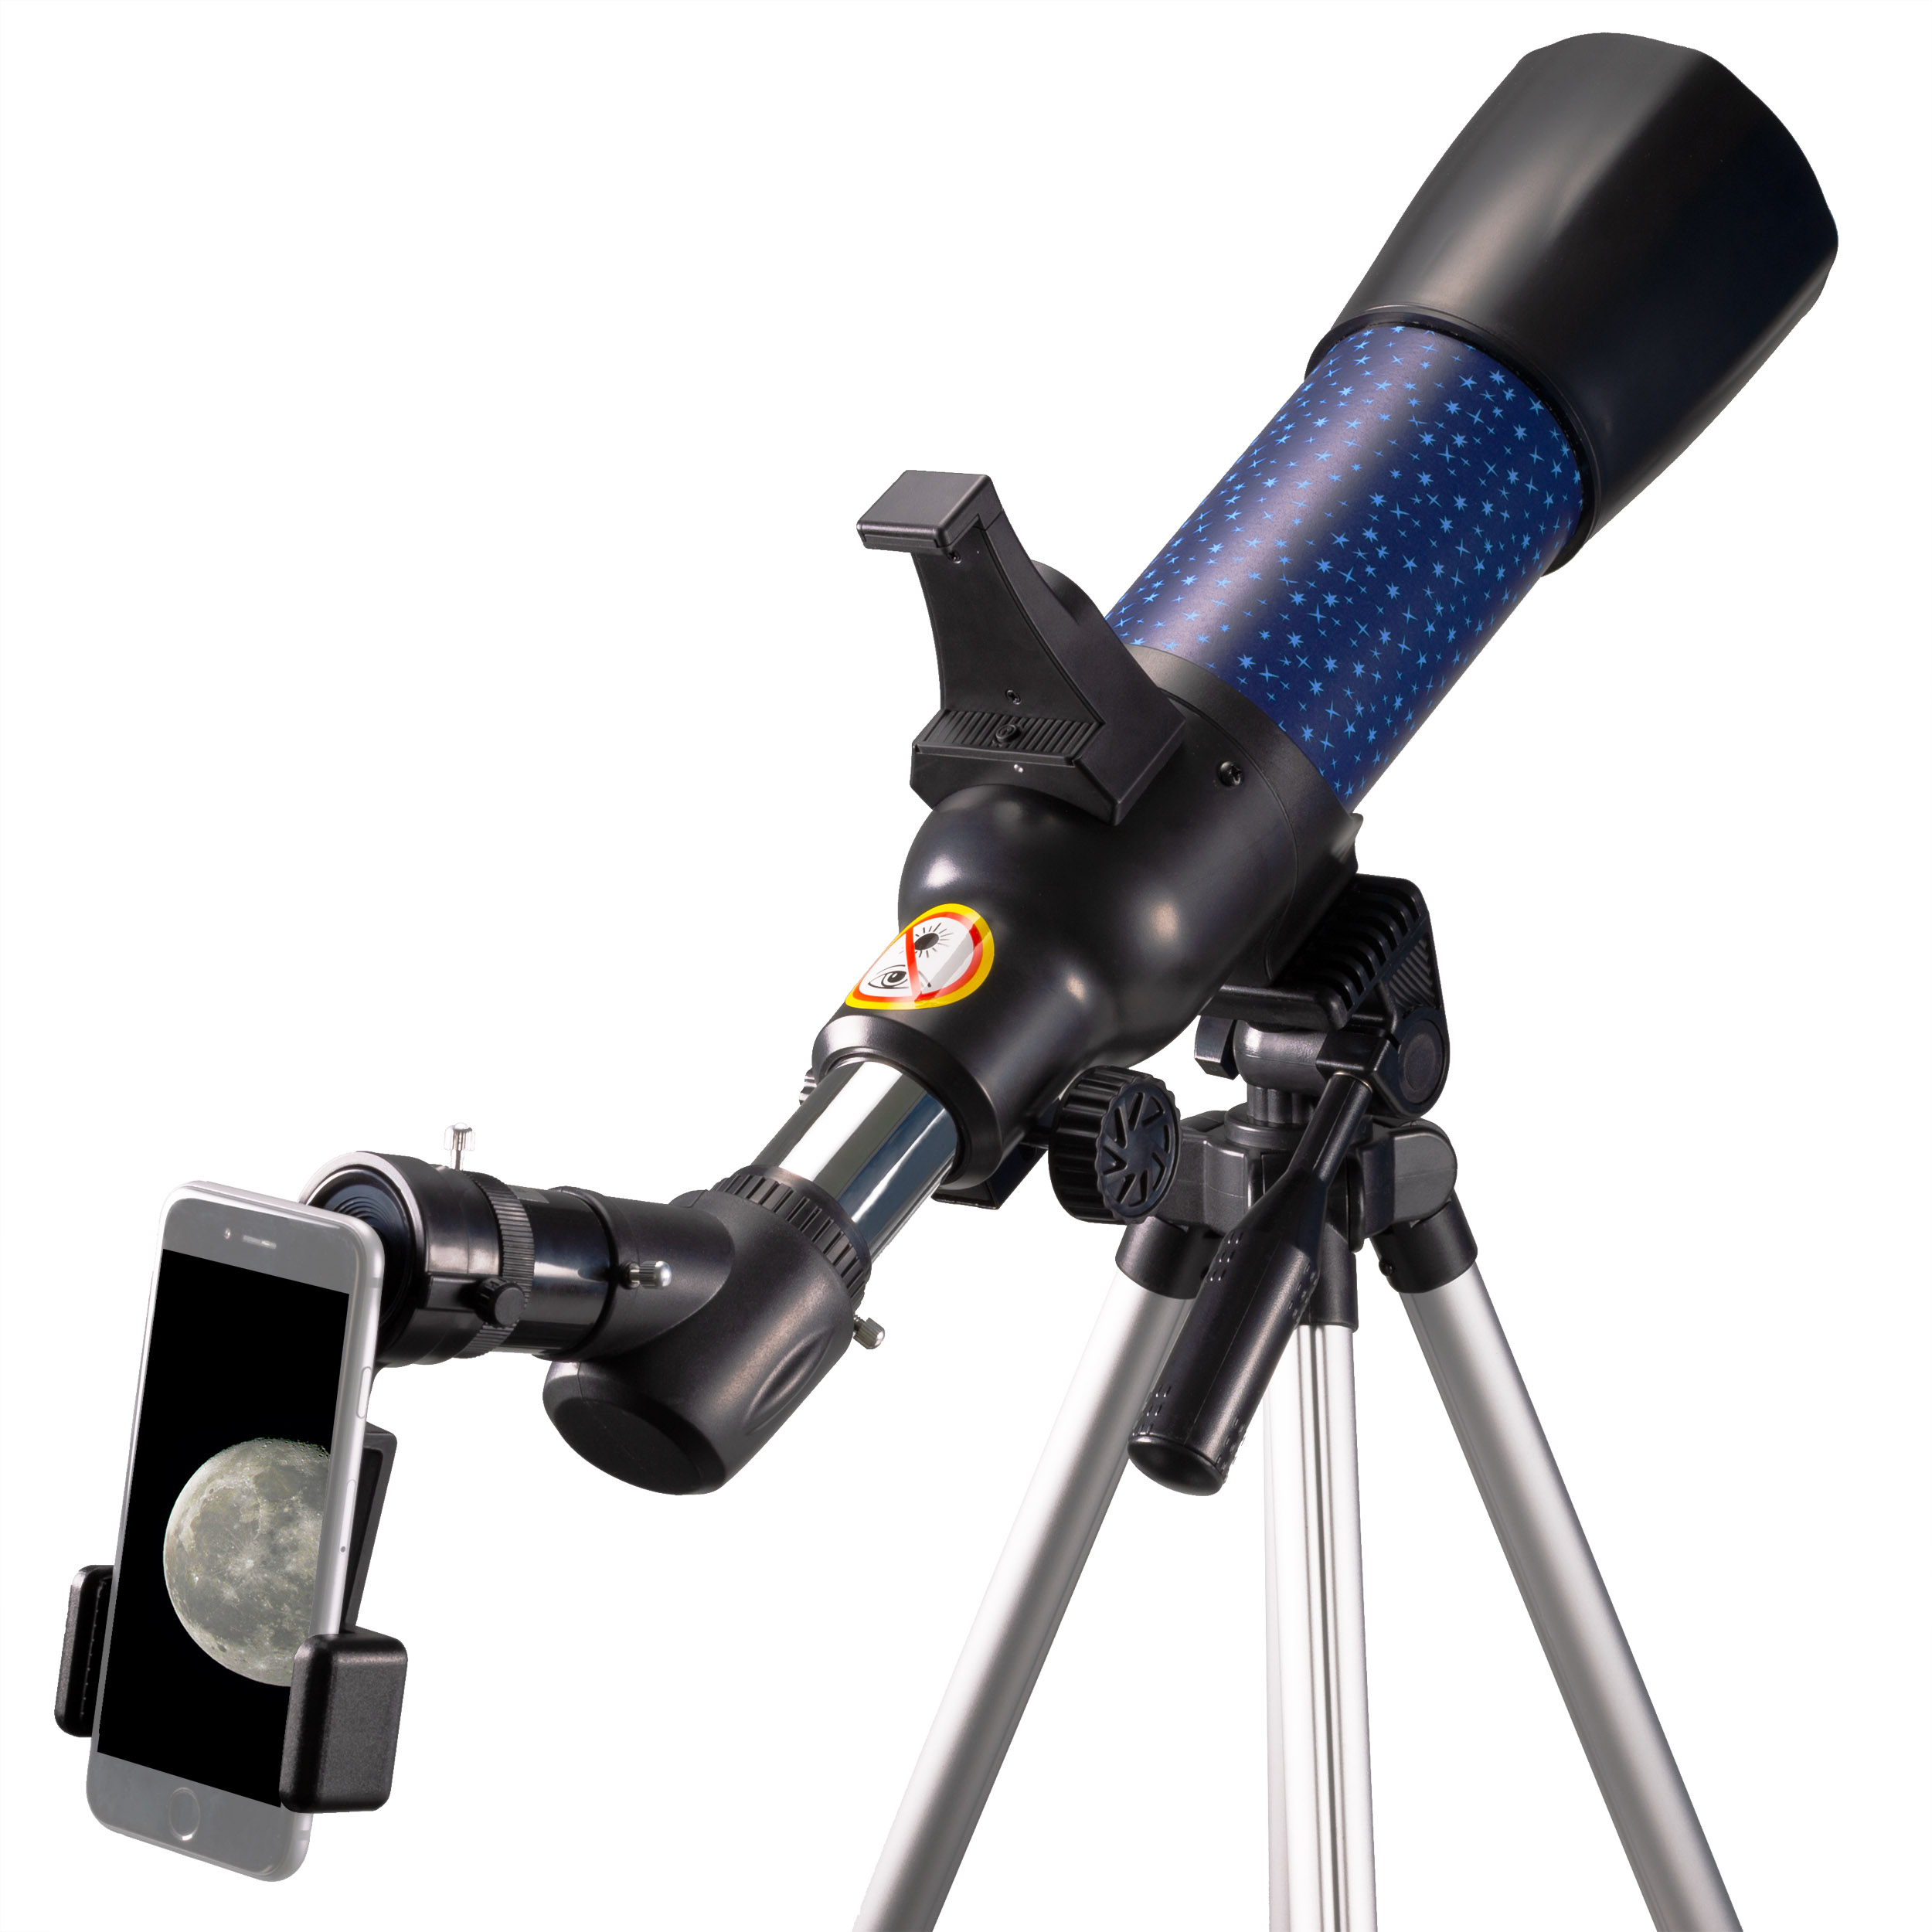 Telescopio para niños y principiantes lunares, distancia focal de 360 mm,  telescopio infantil refractor para explorar la luna y sus cráteres,  telescopio portátil para niños y principiantes